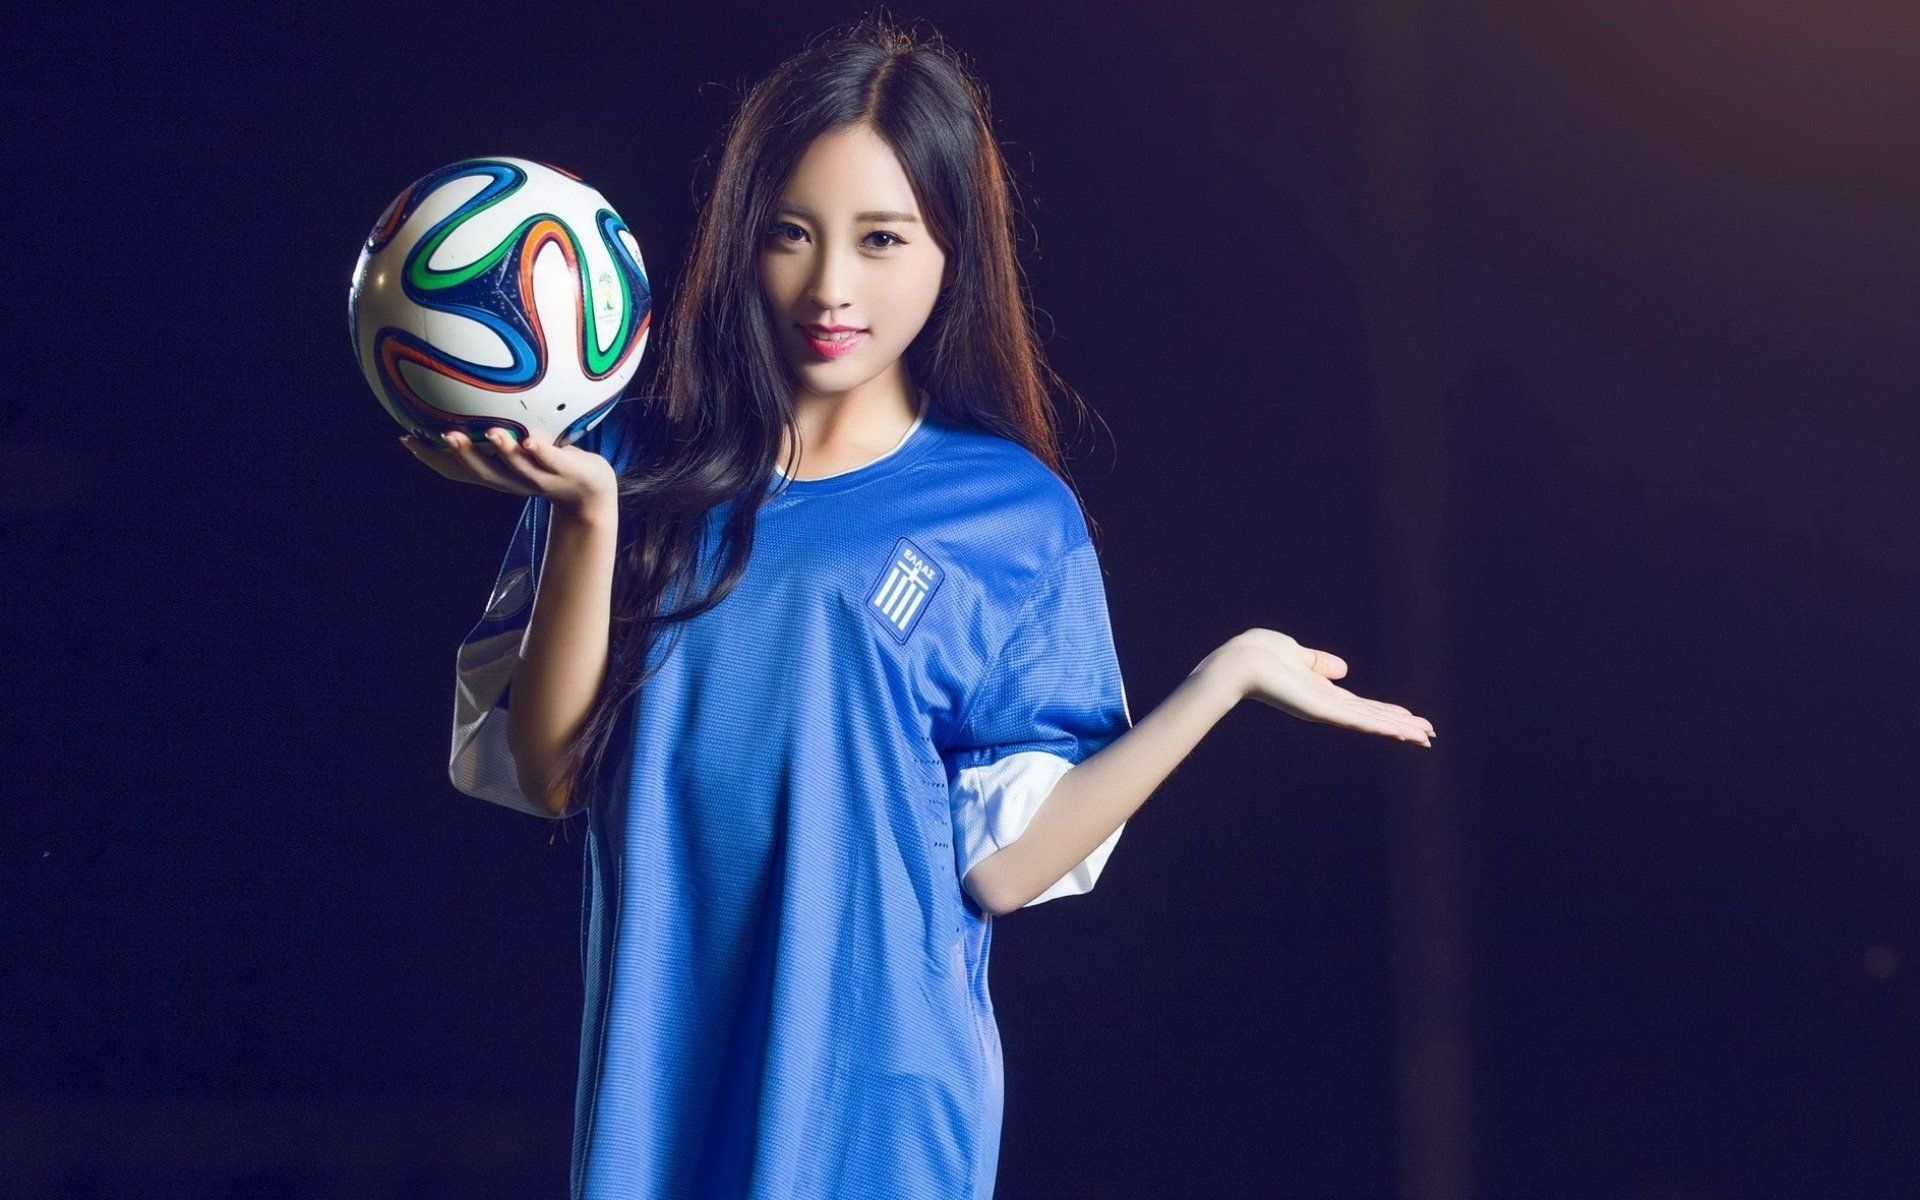 Oriental asian girl girls woman women female model sports soccer